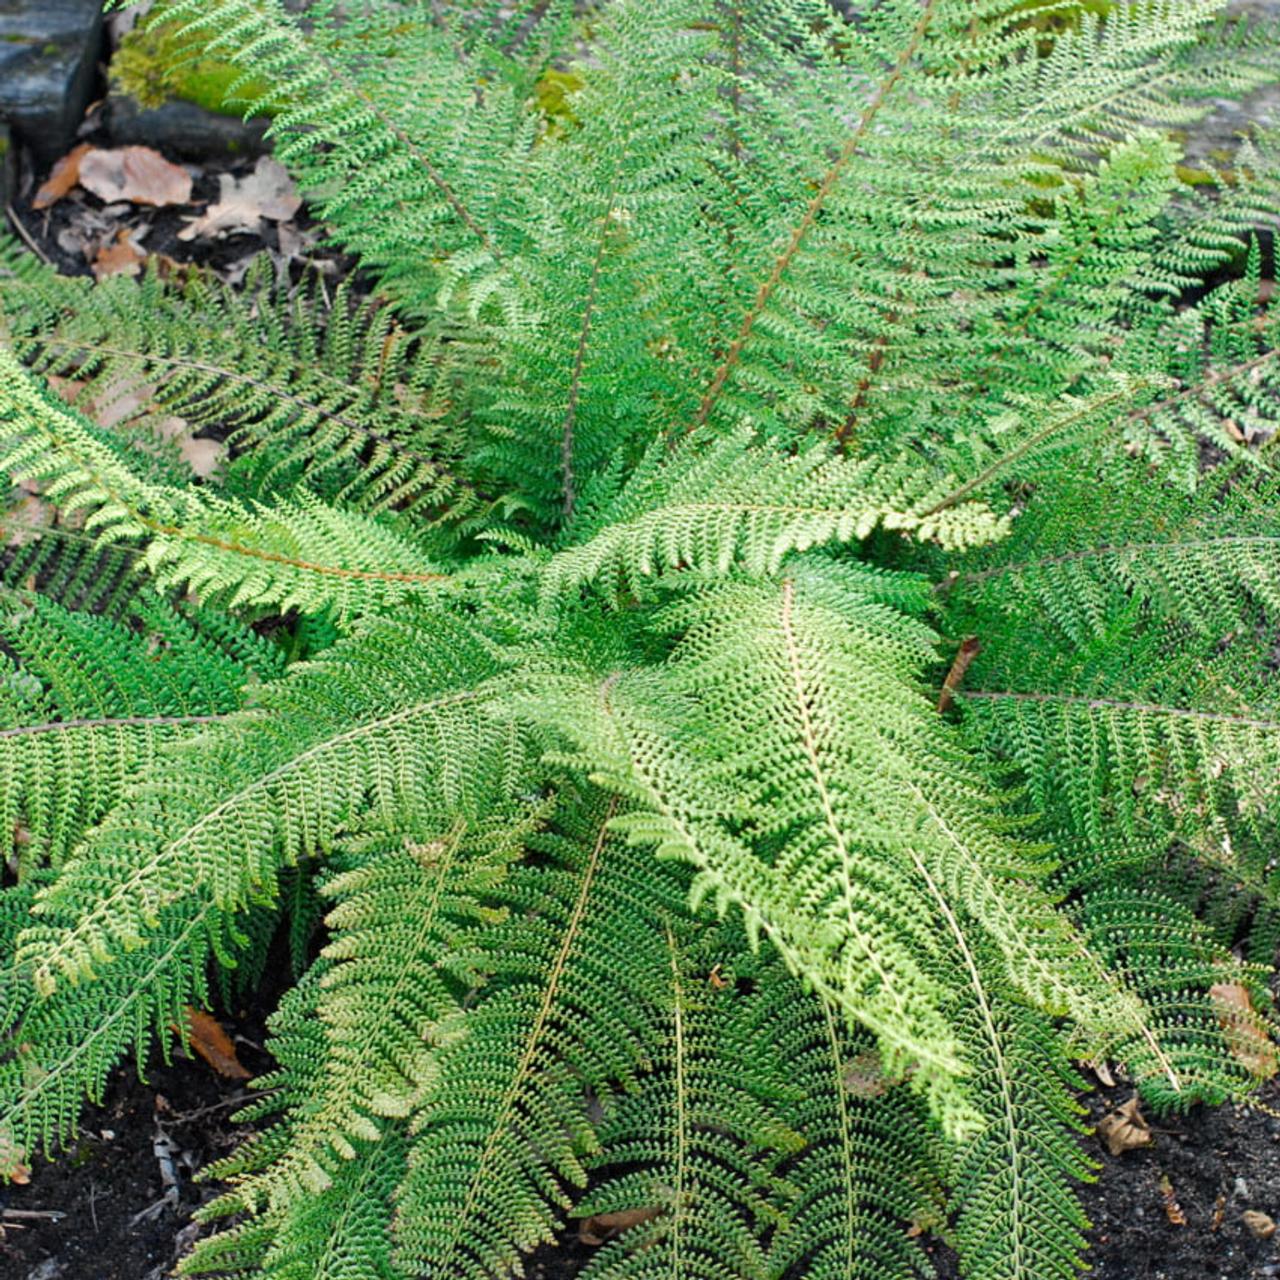 Polystichum setiferum 'Proliferum' plant